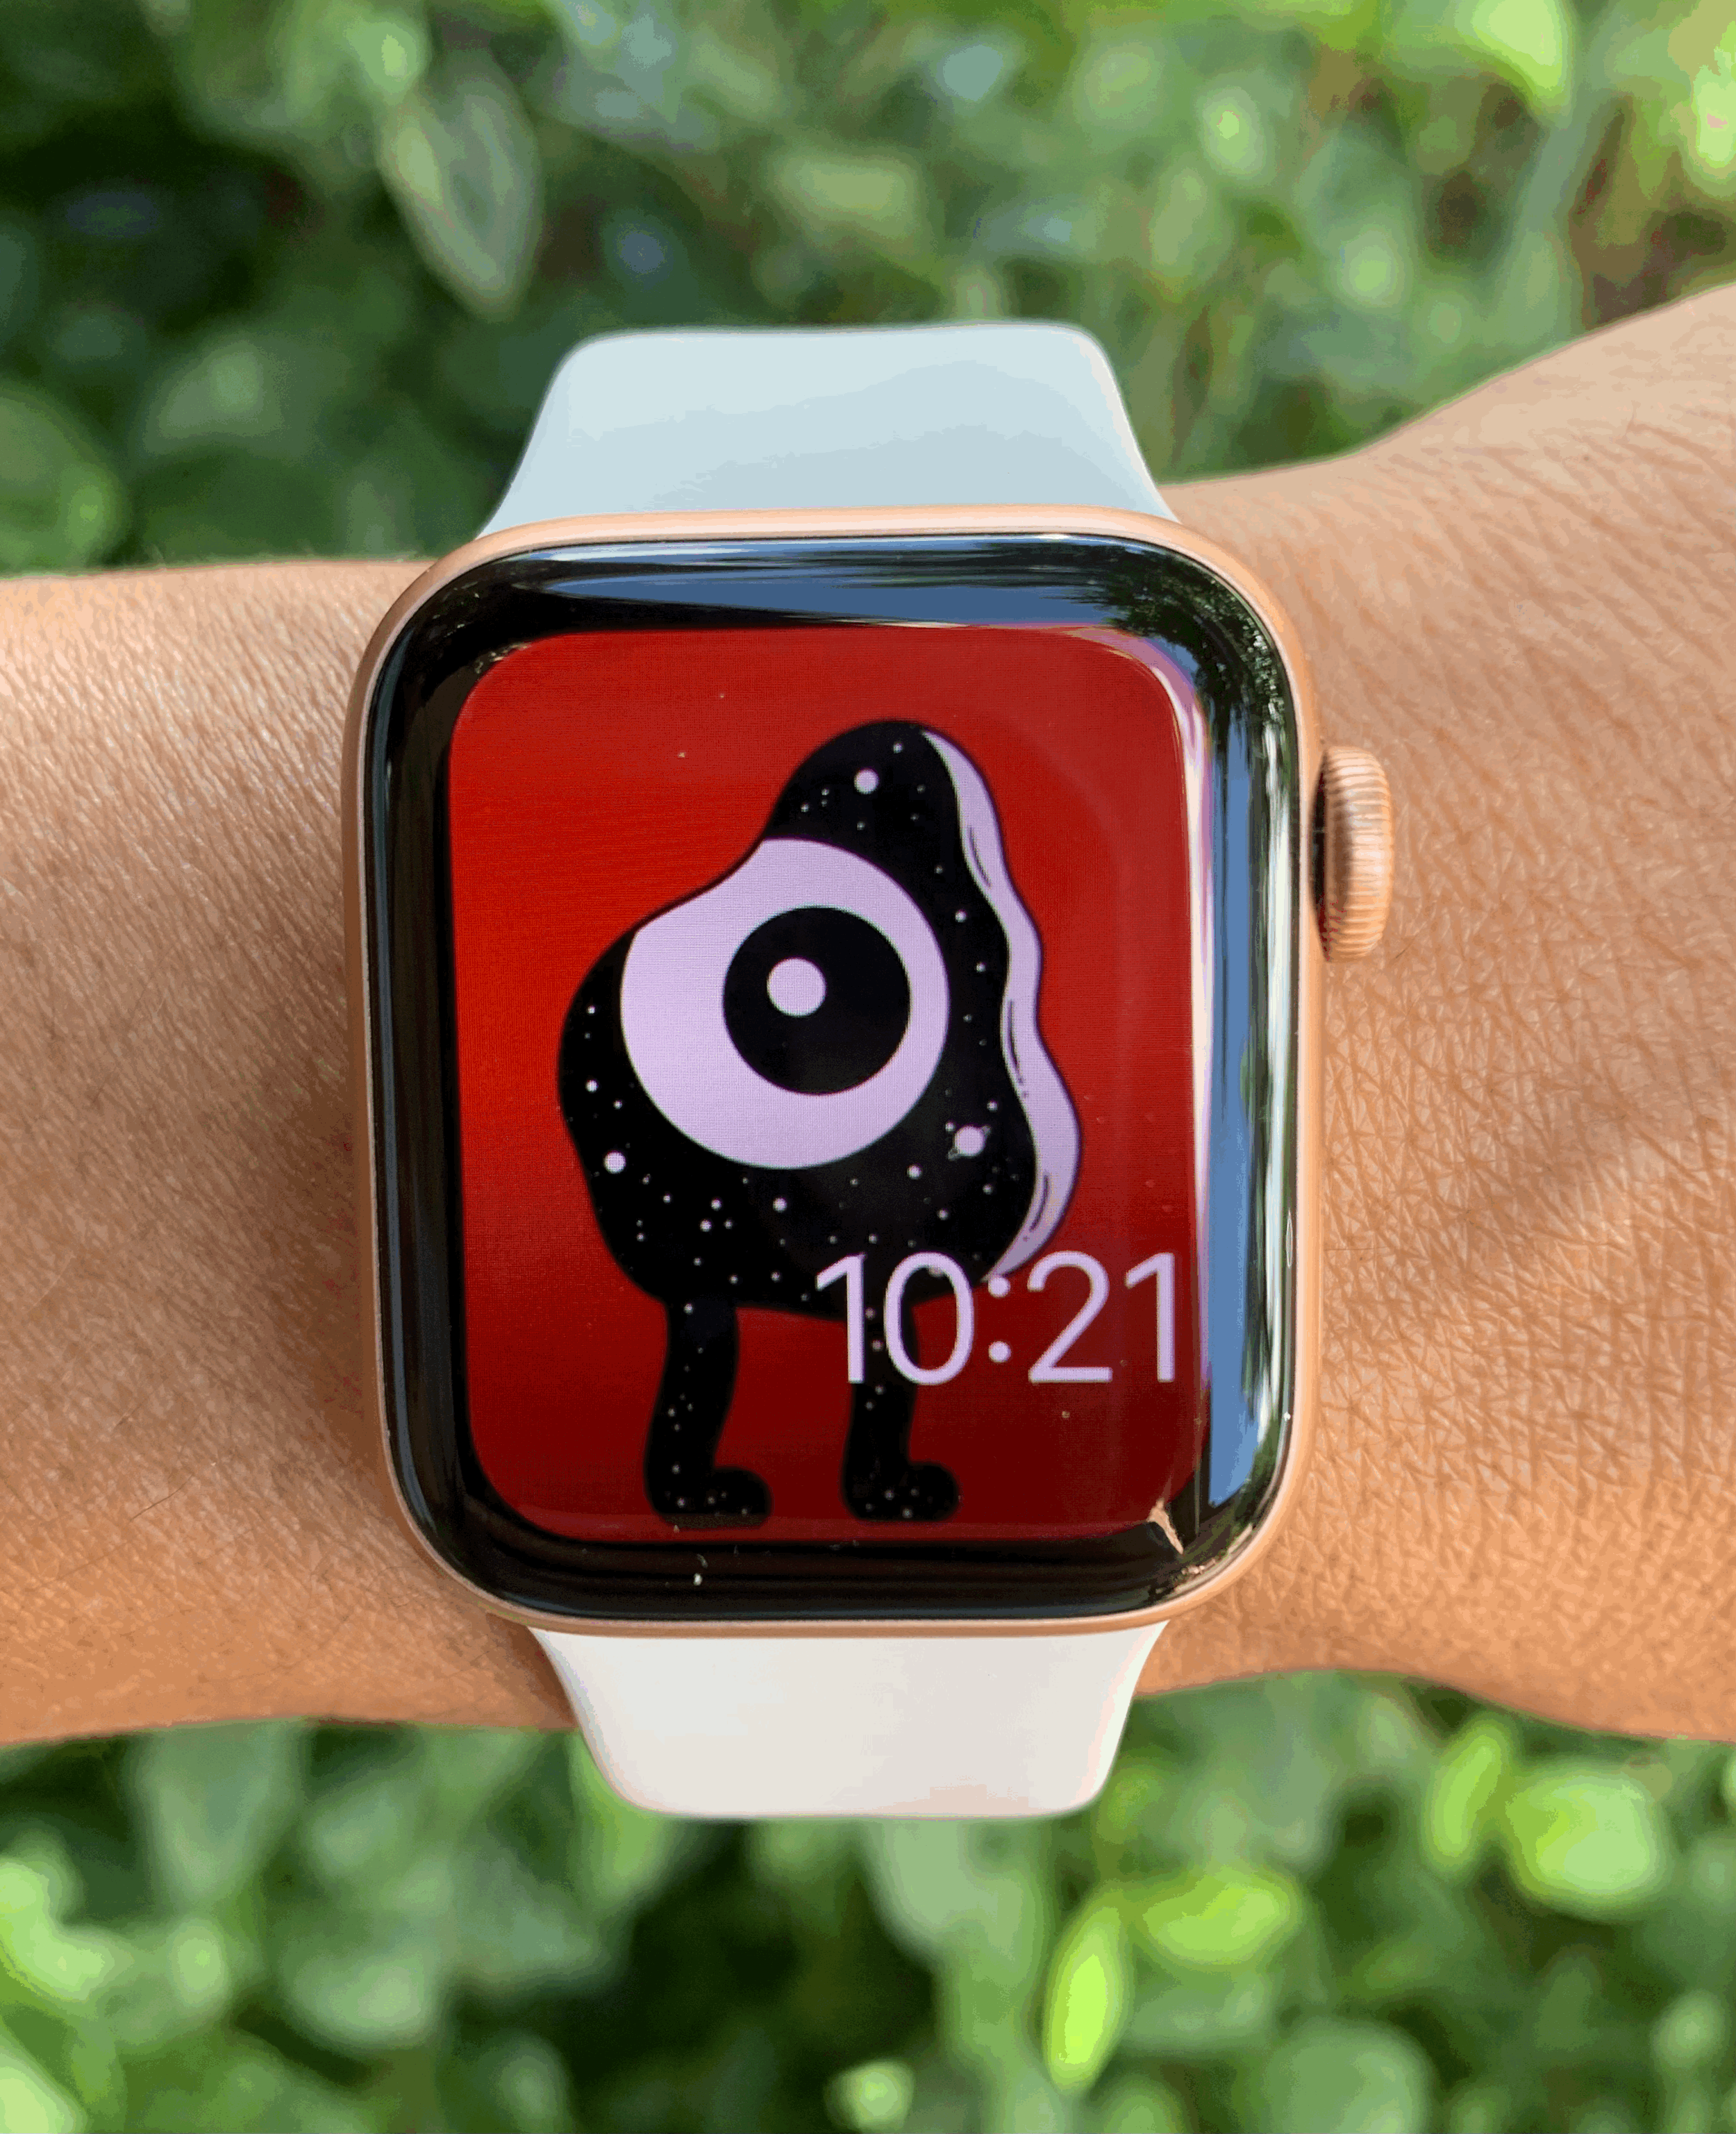 Apple watch face HD wallpapers  Pxfuel